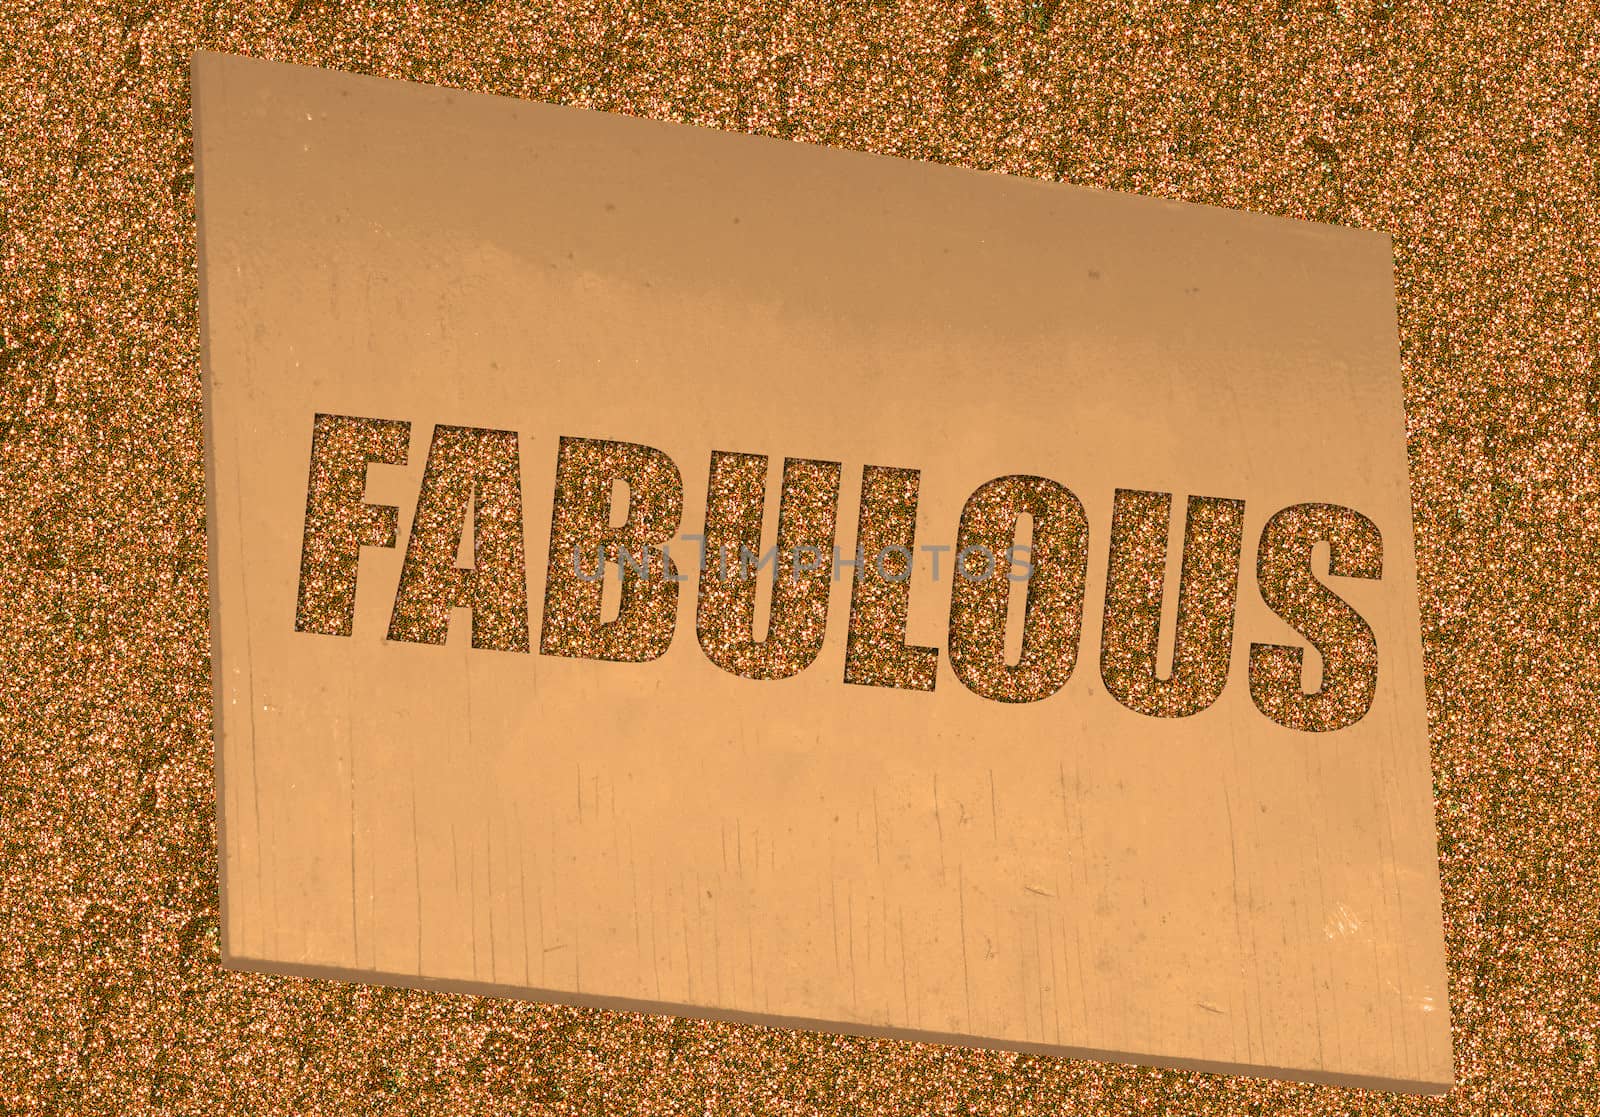 fabulous by ftlaudgirl